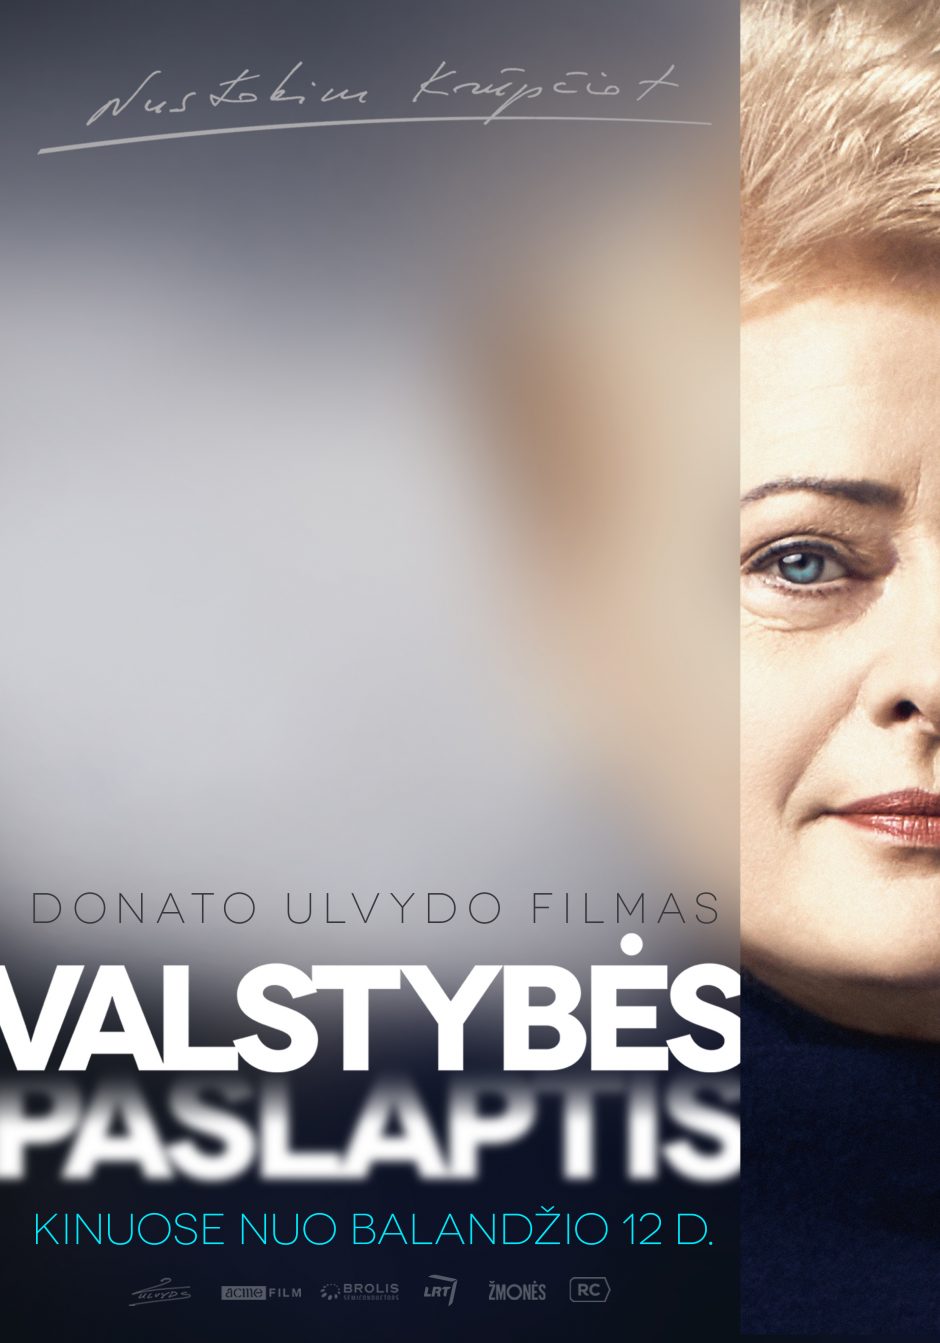 D. Ulvydas: norėjau atskleisti, koks žmogus yra D. Grybauskaitė